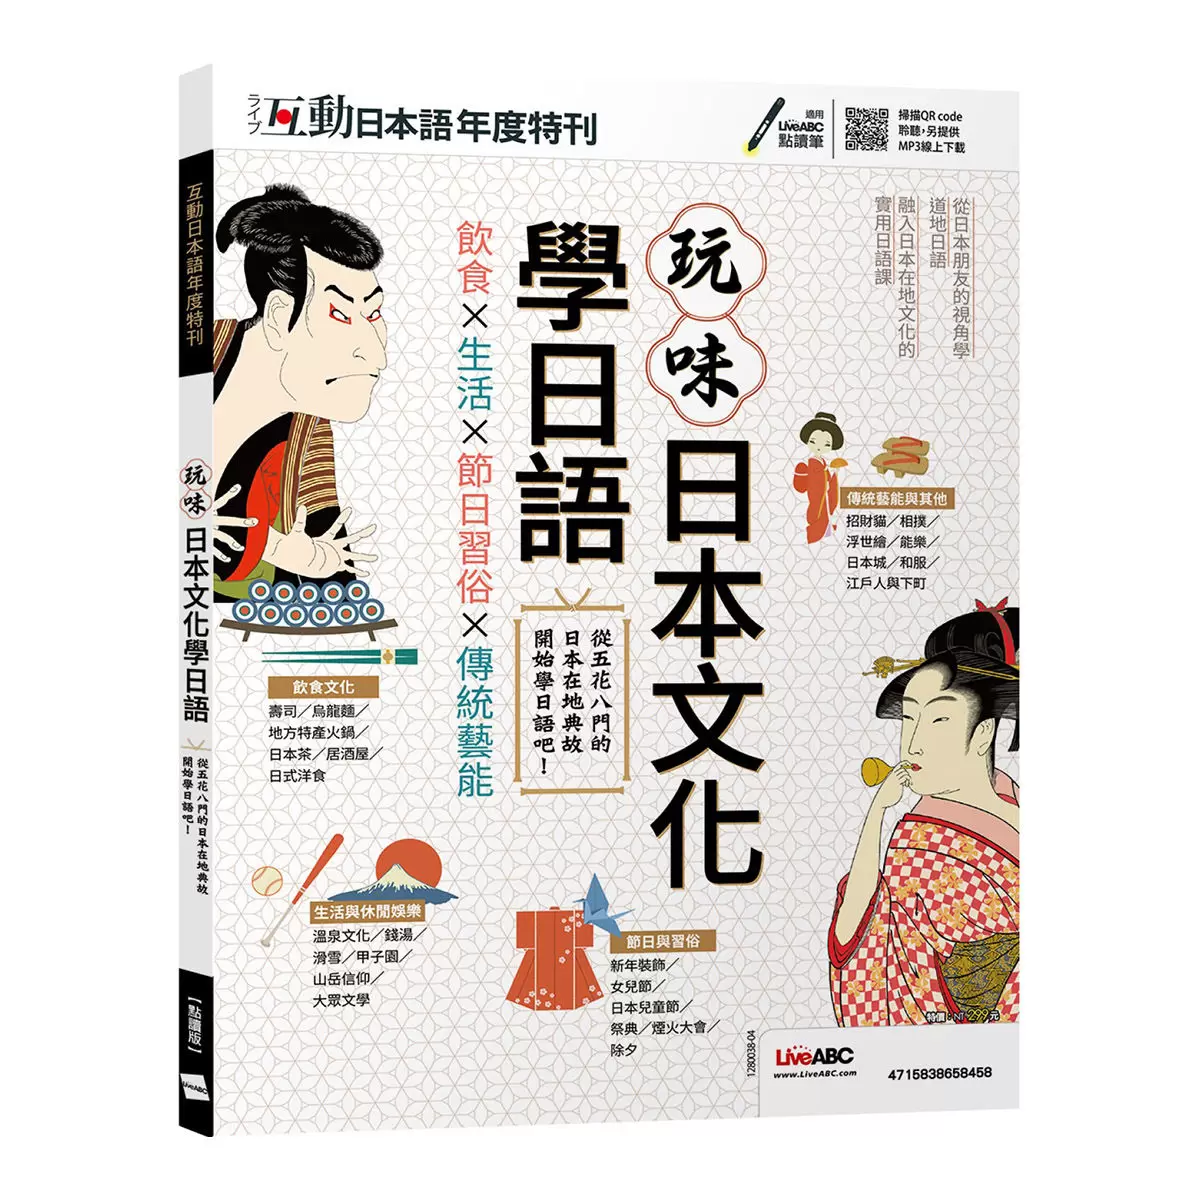 LiveABC 互動日本語年度特刊 玩味日本文化學日語